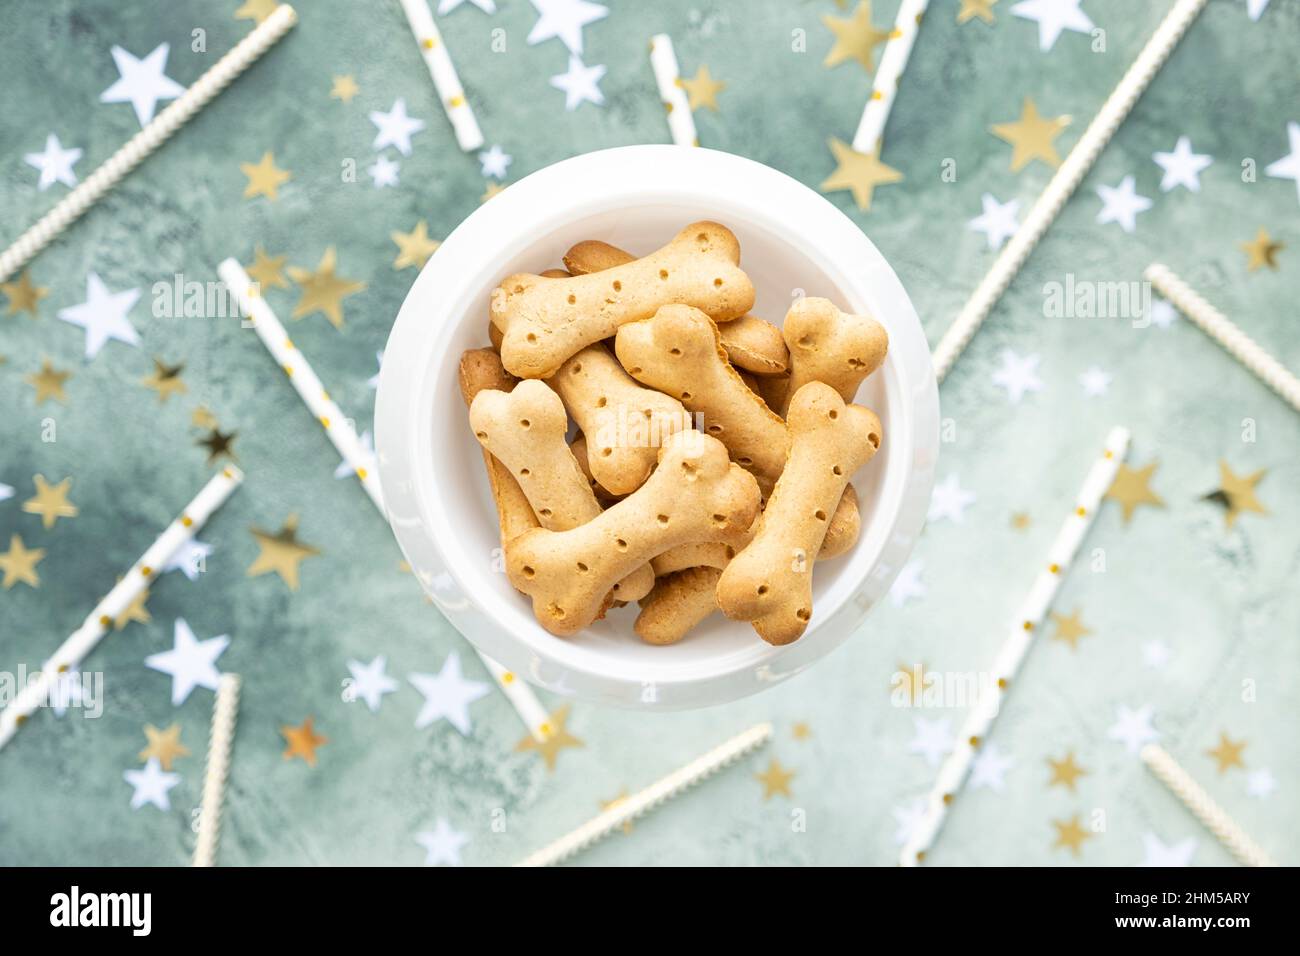 Gâteries pour chiens, biscuits en os dans un bol blanc sur fond vert festif avec étoiles dorées et blanches et pailles pour cocktails. Fête d'anniversaire pour animal de compagnie. Vue de dessus Banque D'Images